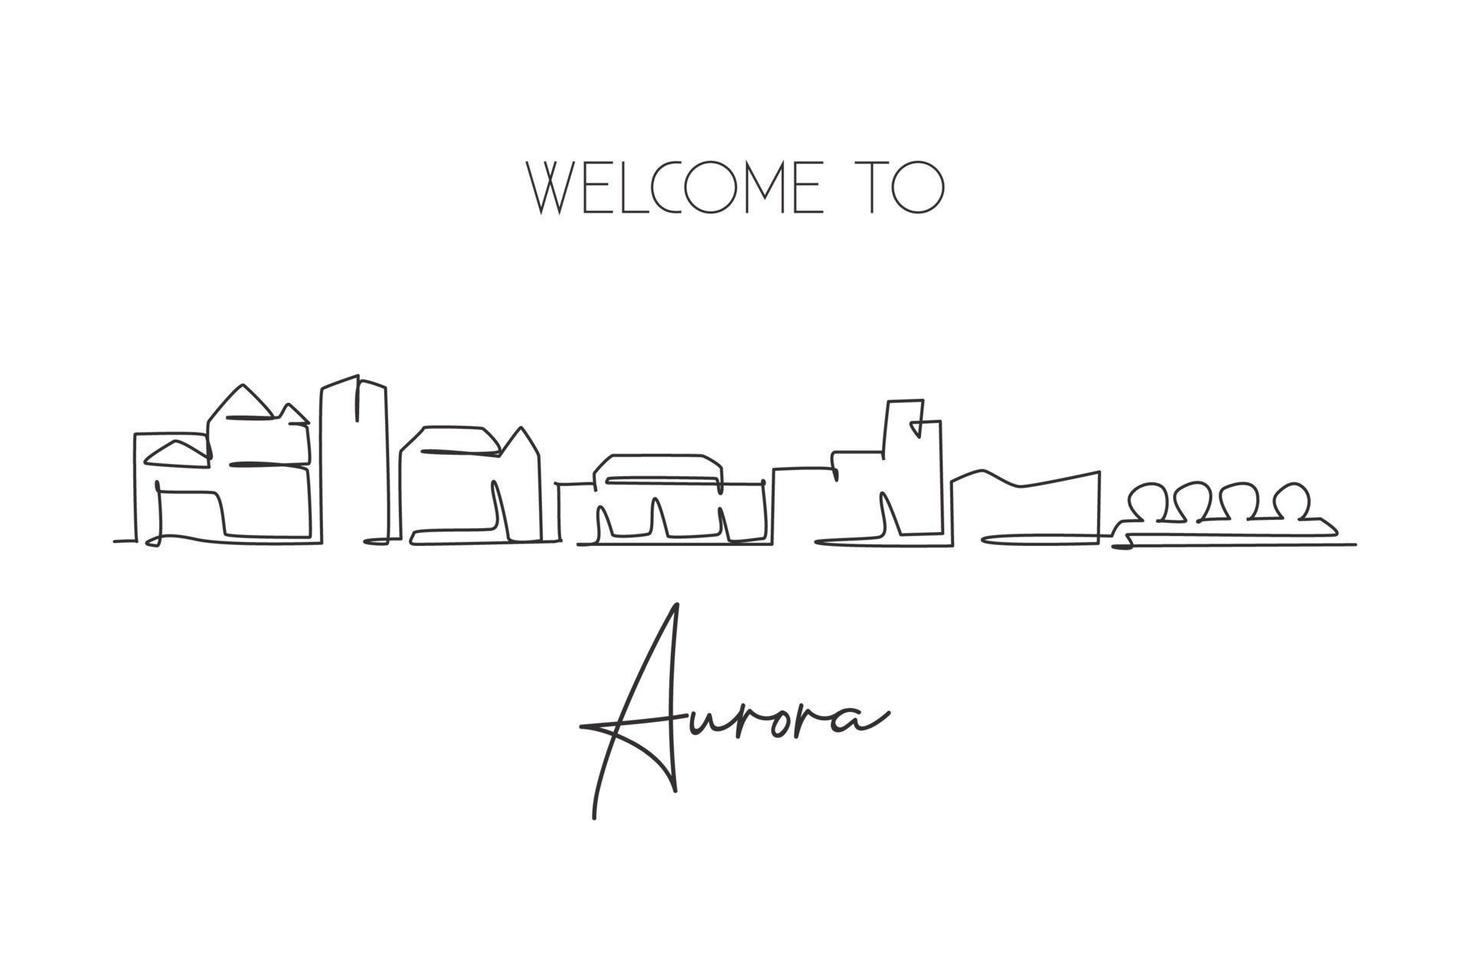 enda kontinuerlig linje ritning av aurora city skyline, colorado. känt stadsskraplandskap. världsresor hem väggdekor konst affisch tryck koncept. modern en linje rita design vektor illustration